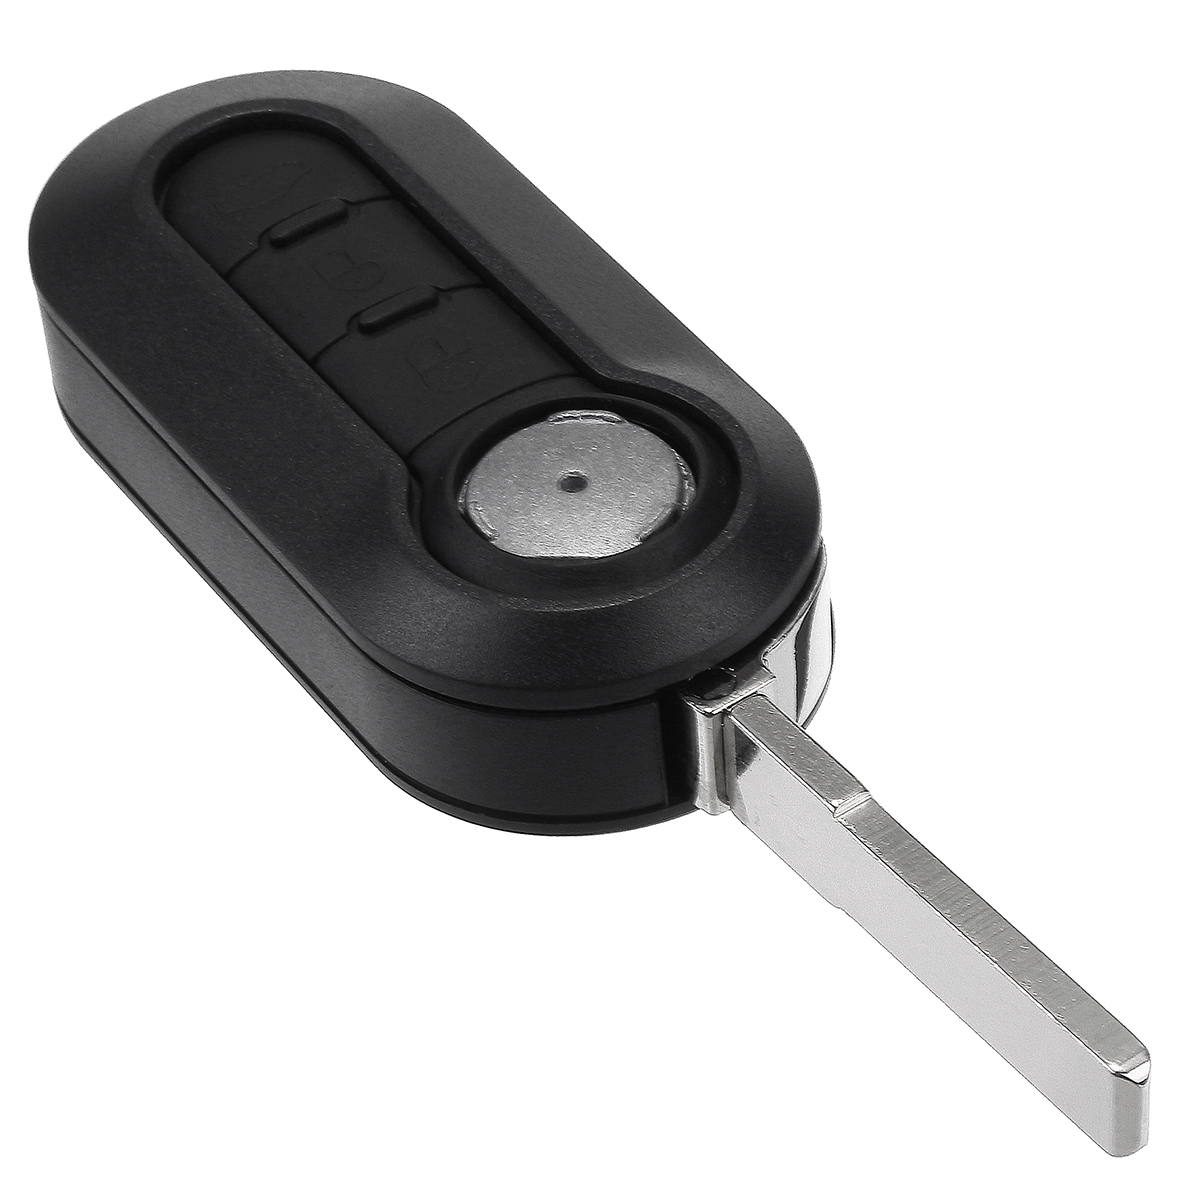 Voiture 3 boutons à distance Flip Key Cover Case Shell w / lame et Batterie pour Fiat 500